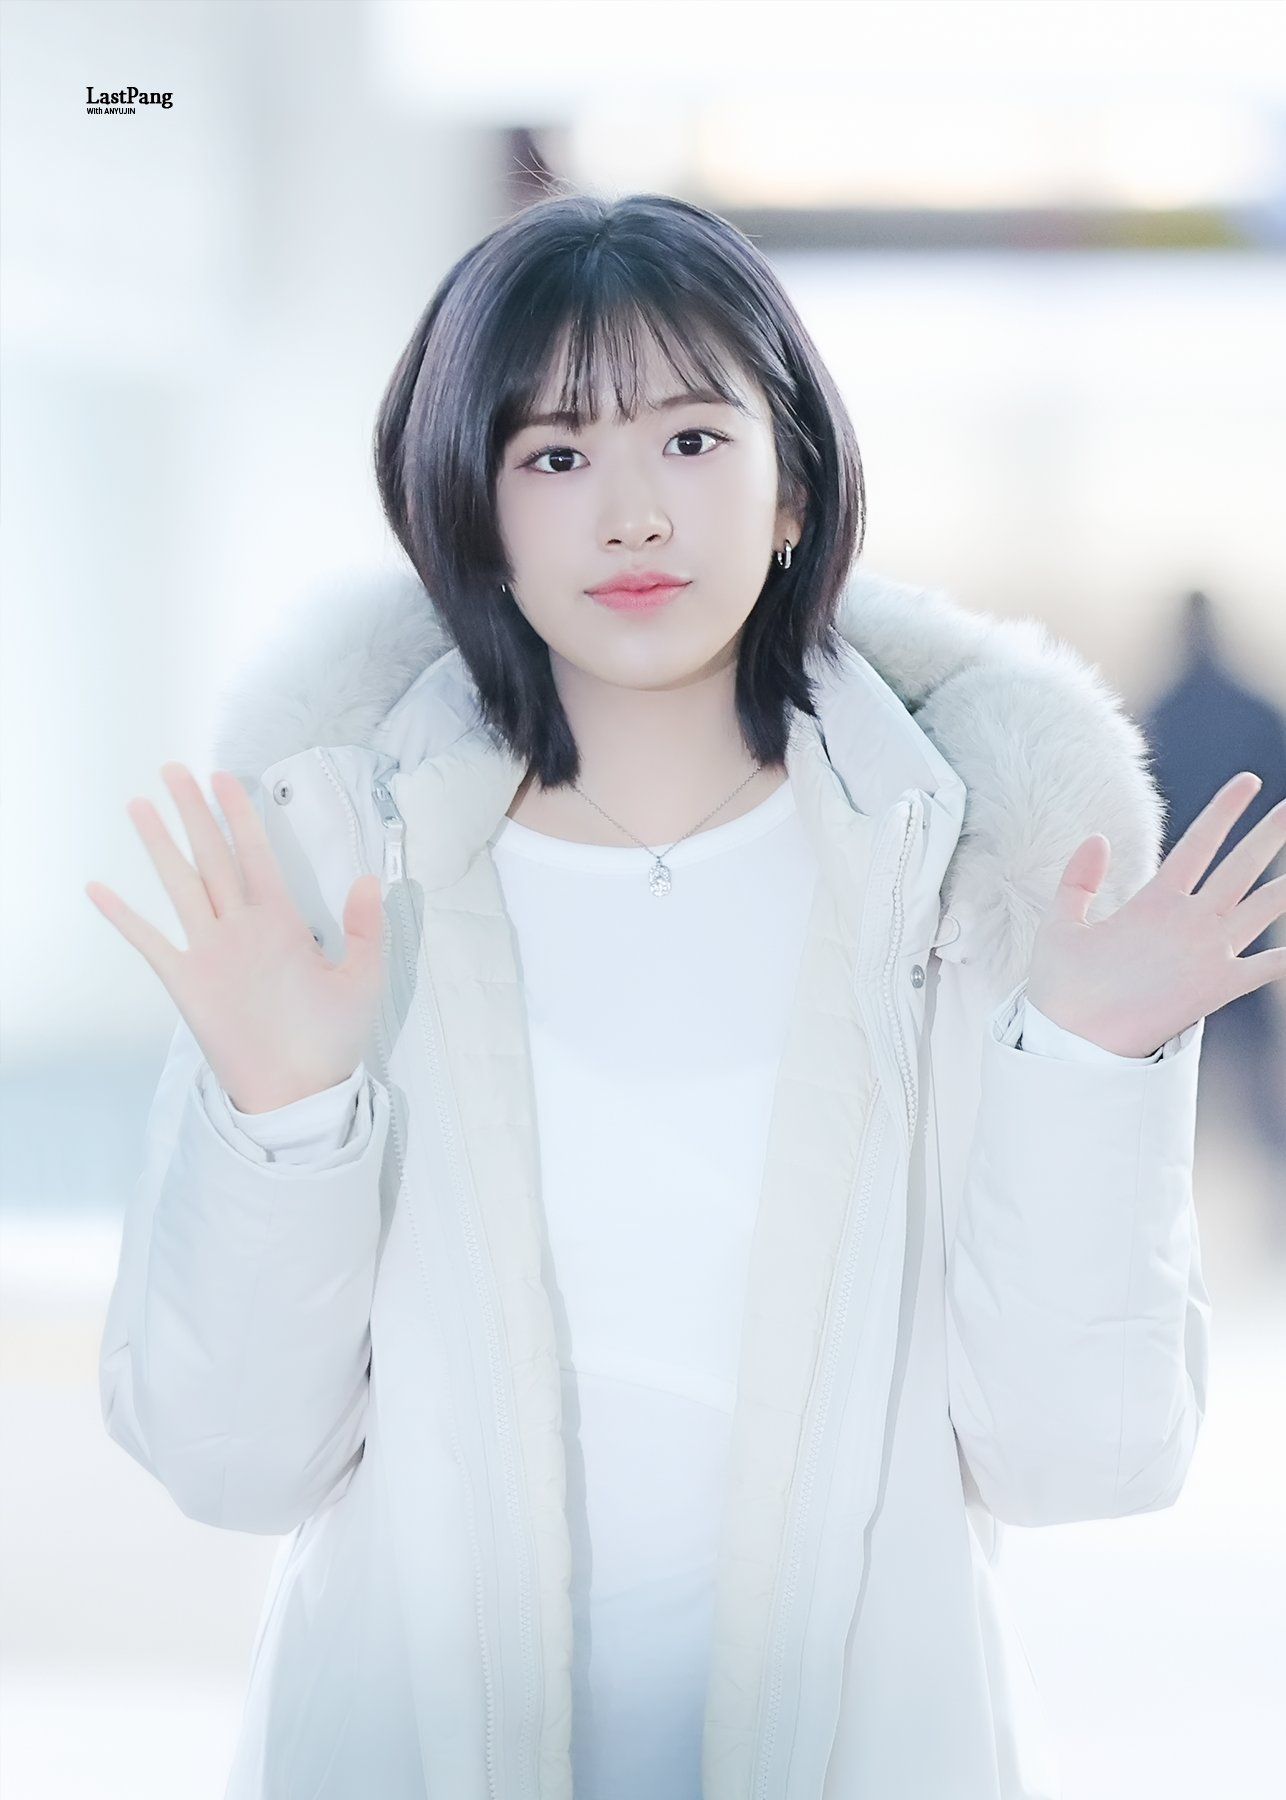 Ahn Yujin is leaving